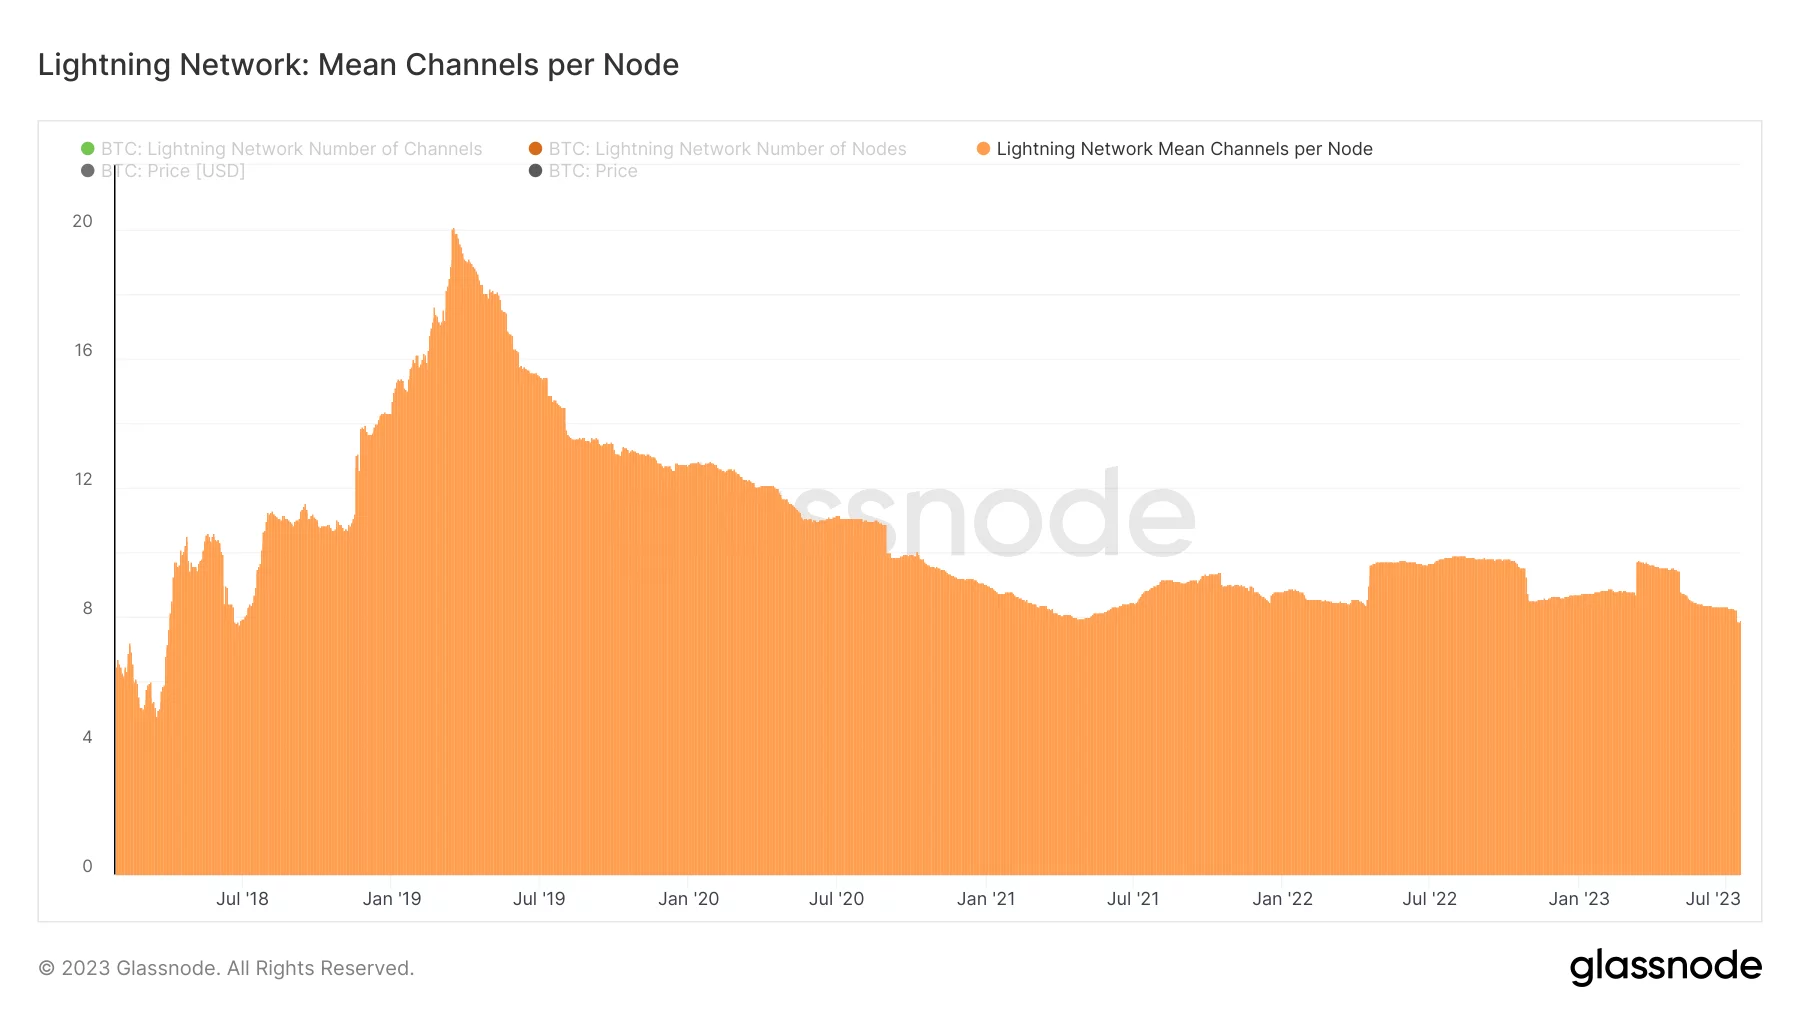 Figura 4 - Número médio de canais por nó na Lightning Network